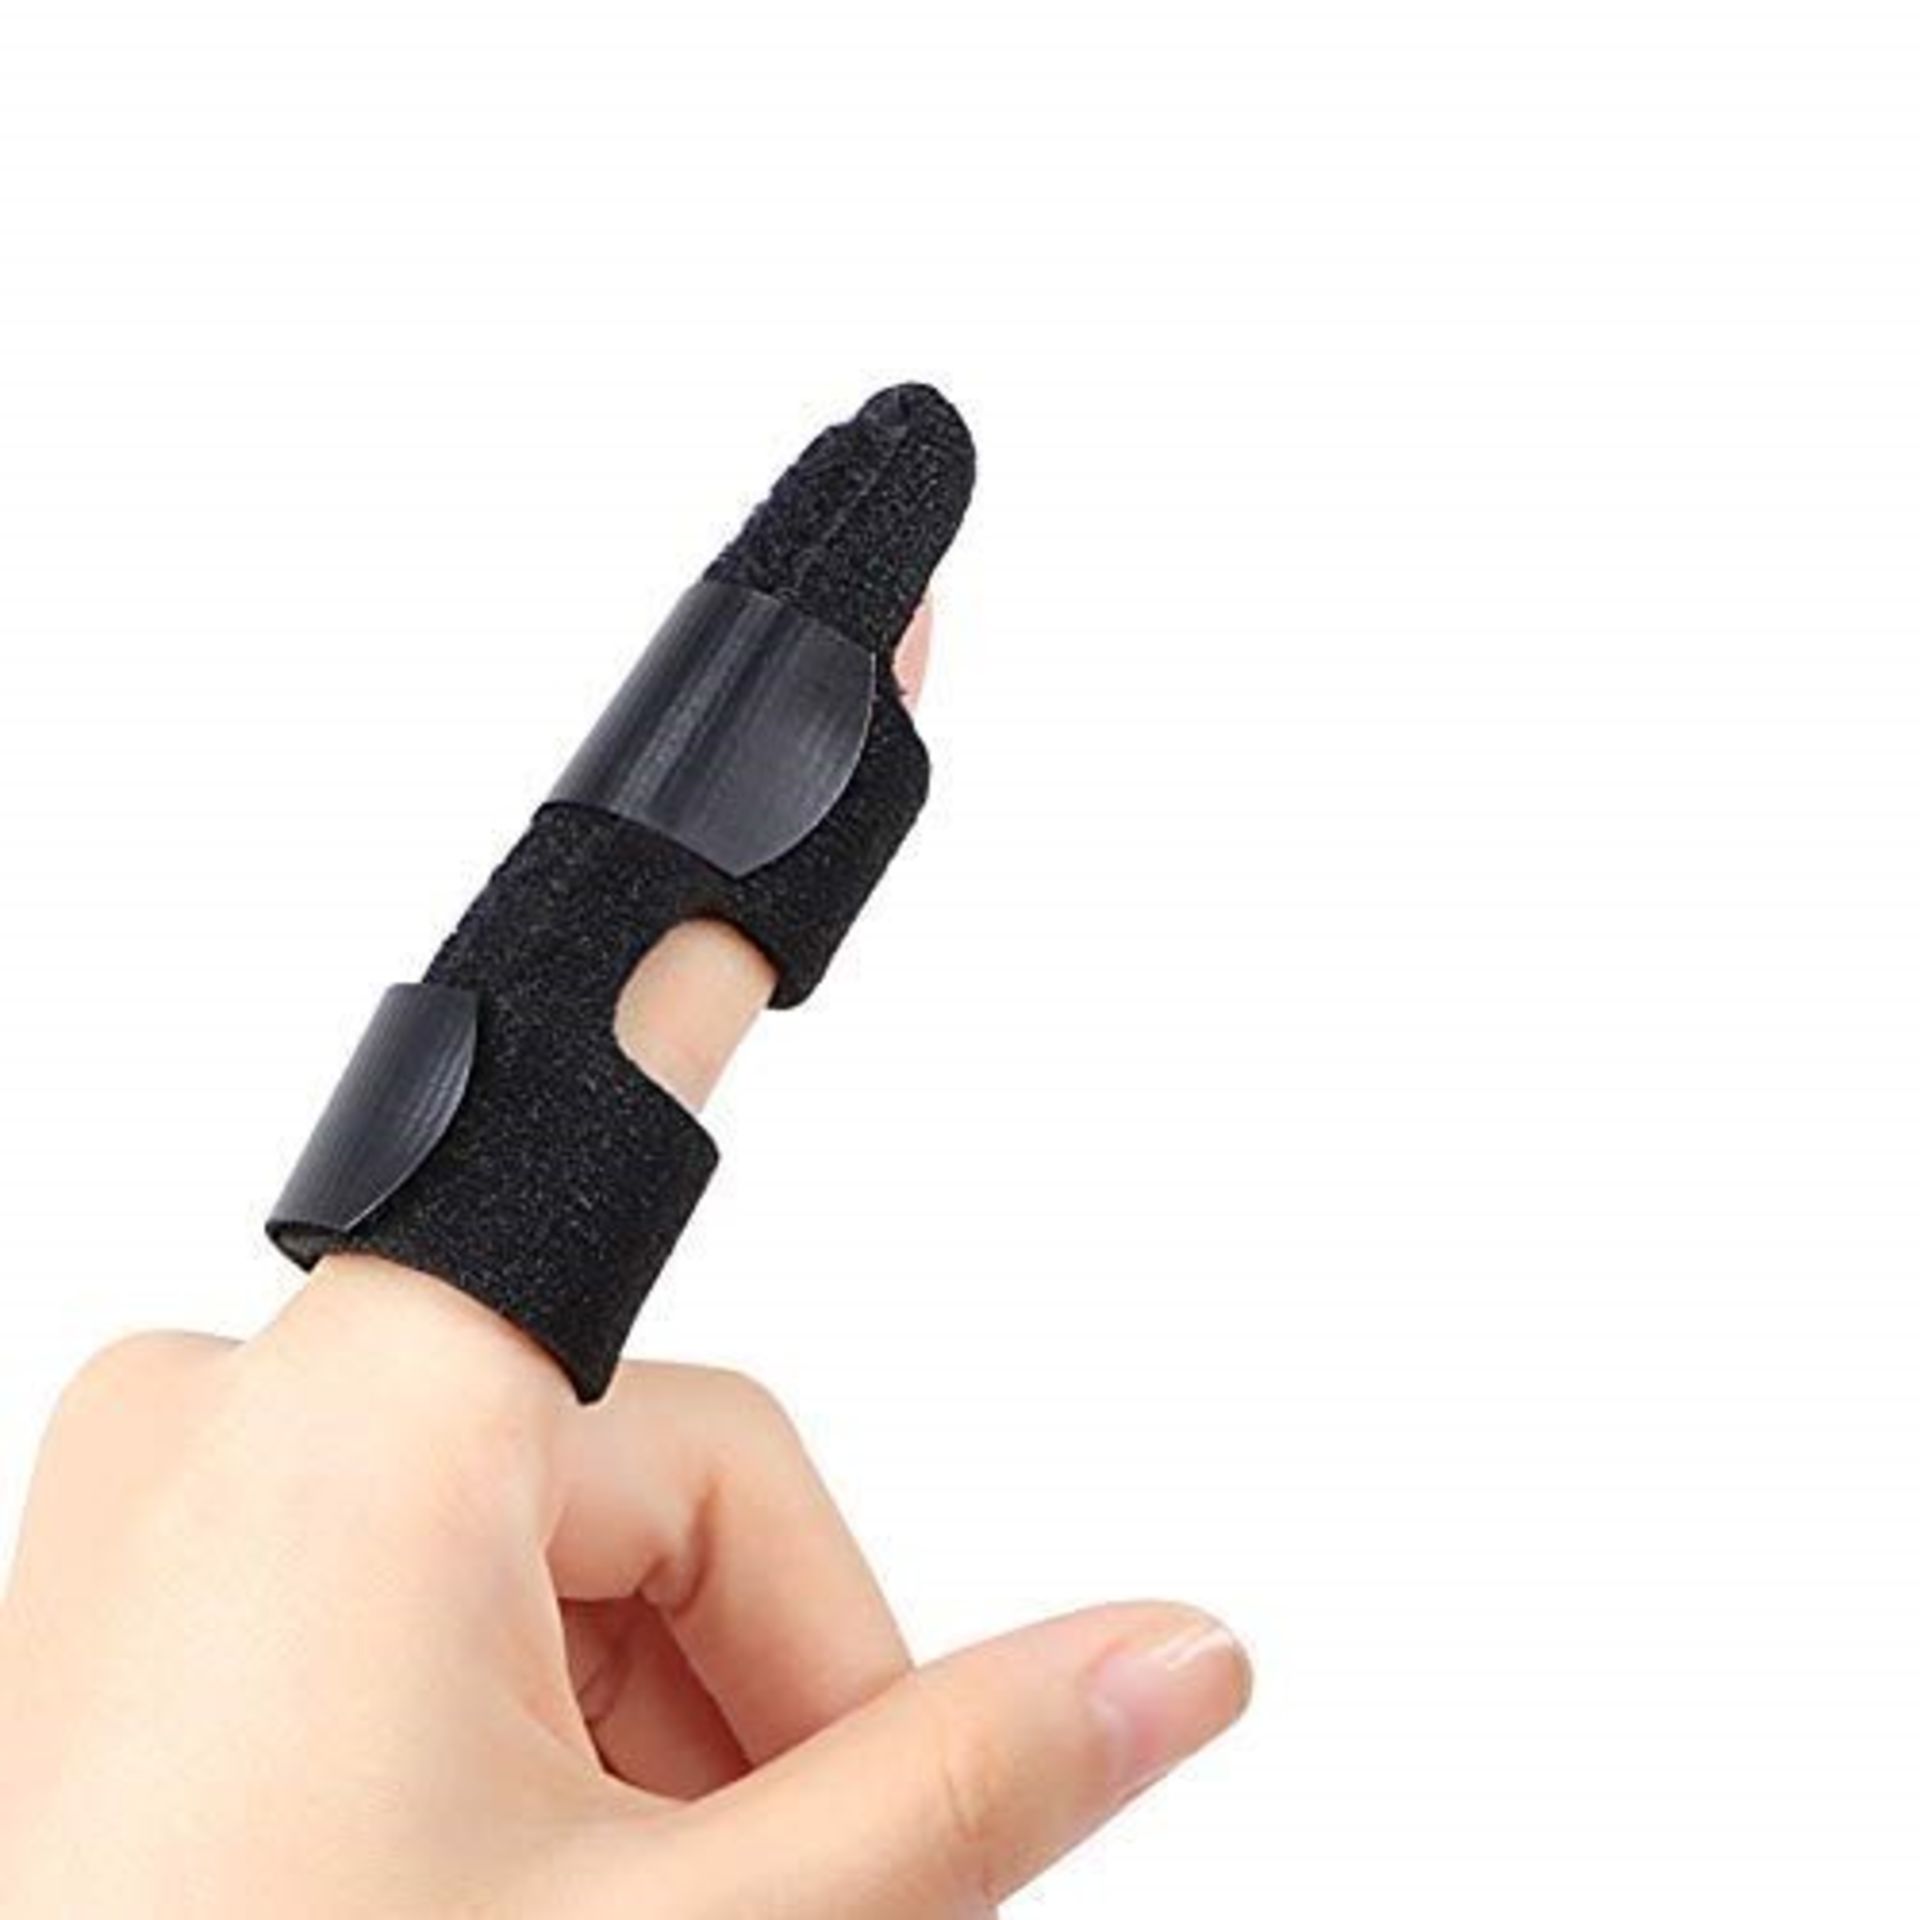 DOACT Trigger Finger Splint for Broken Fingers, Finger Support Brace Arthritis for Mal